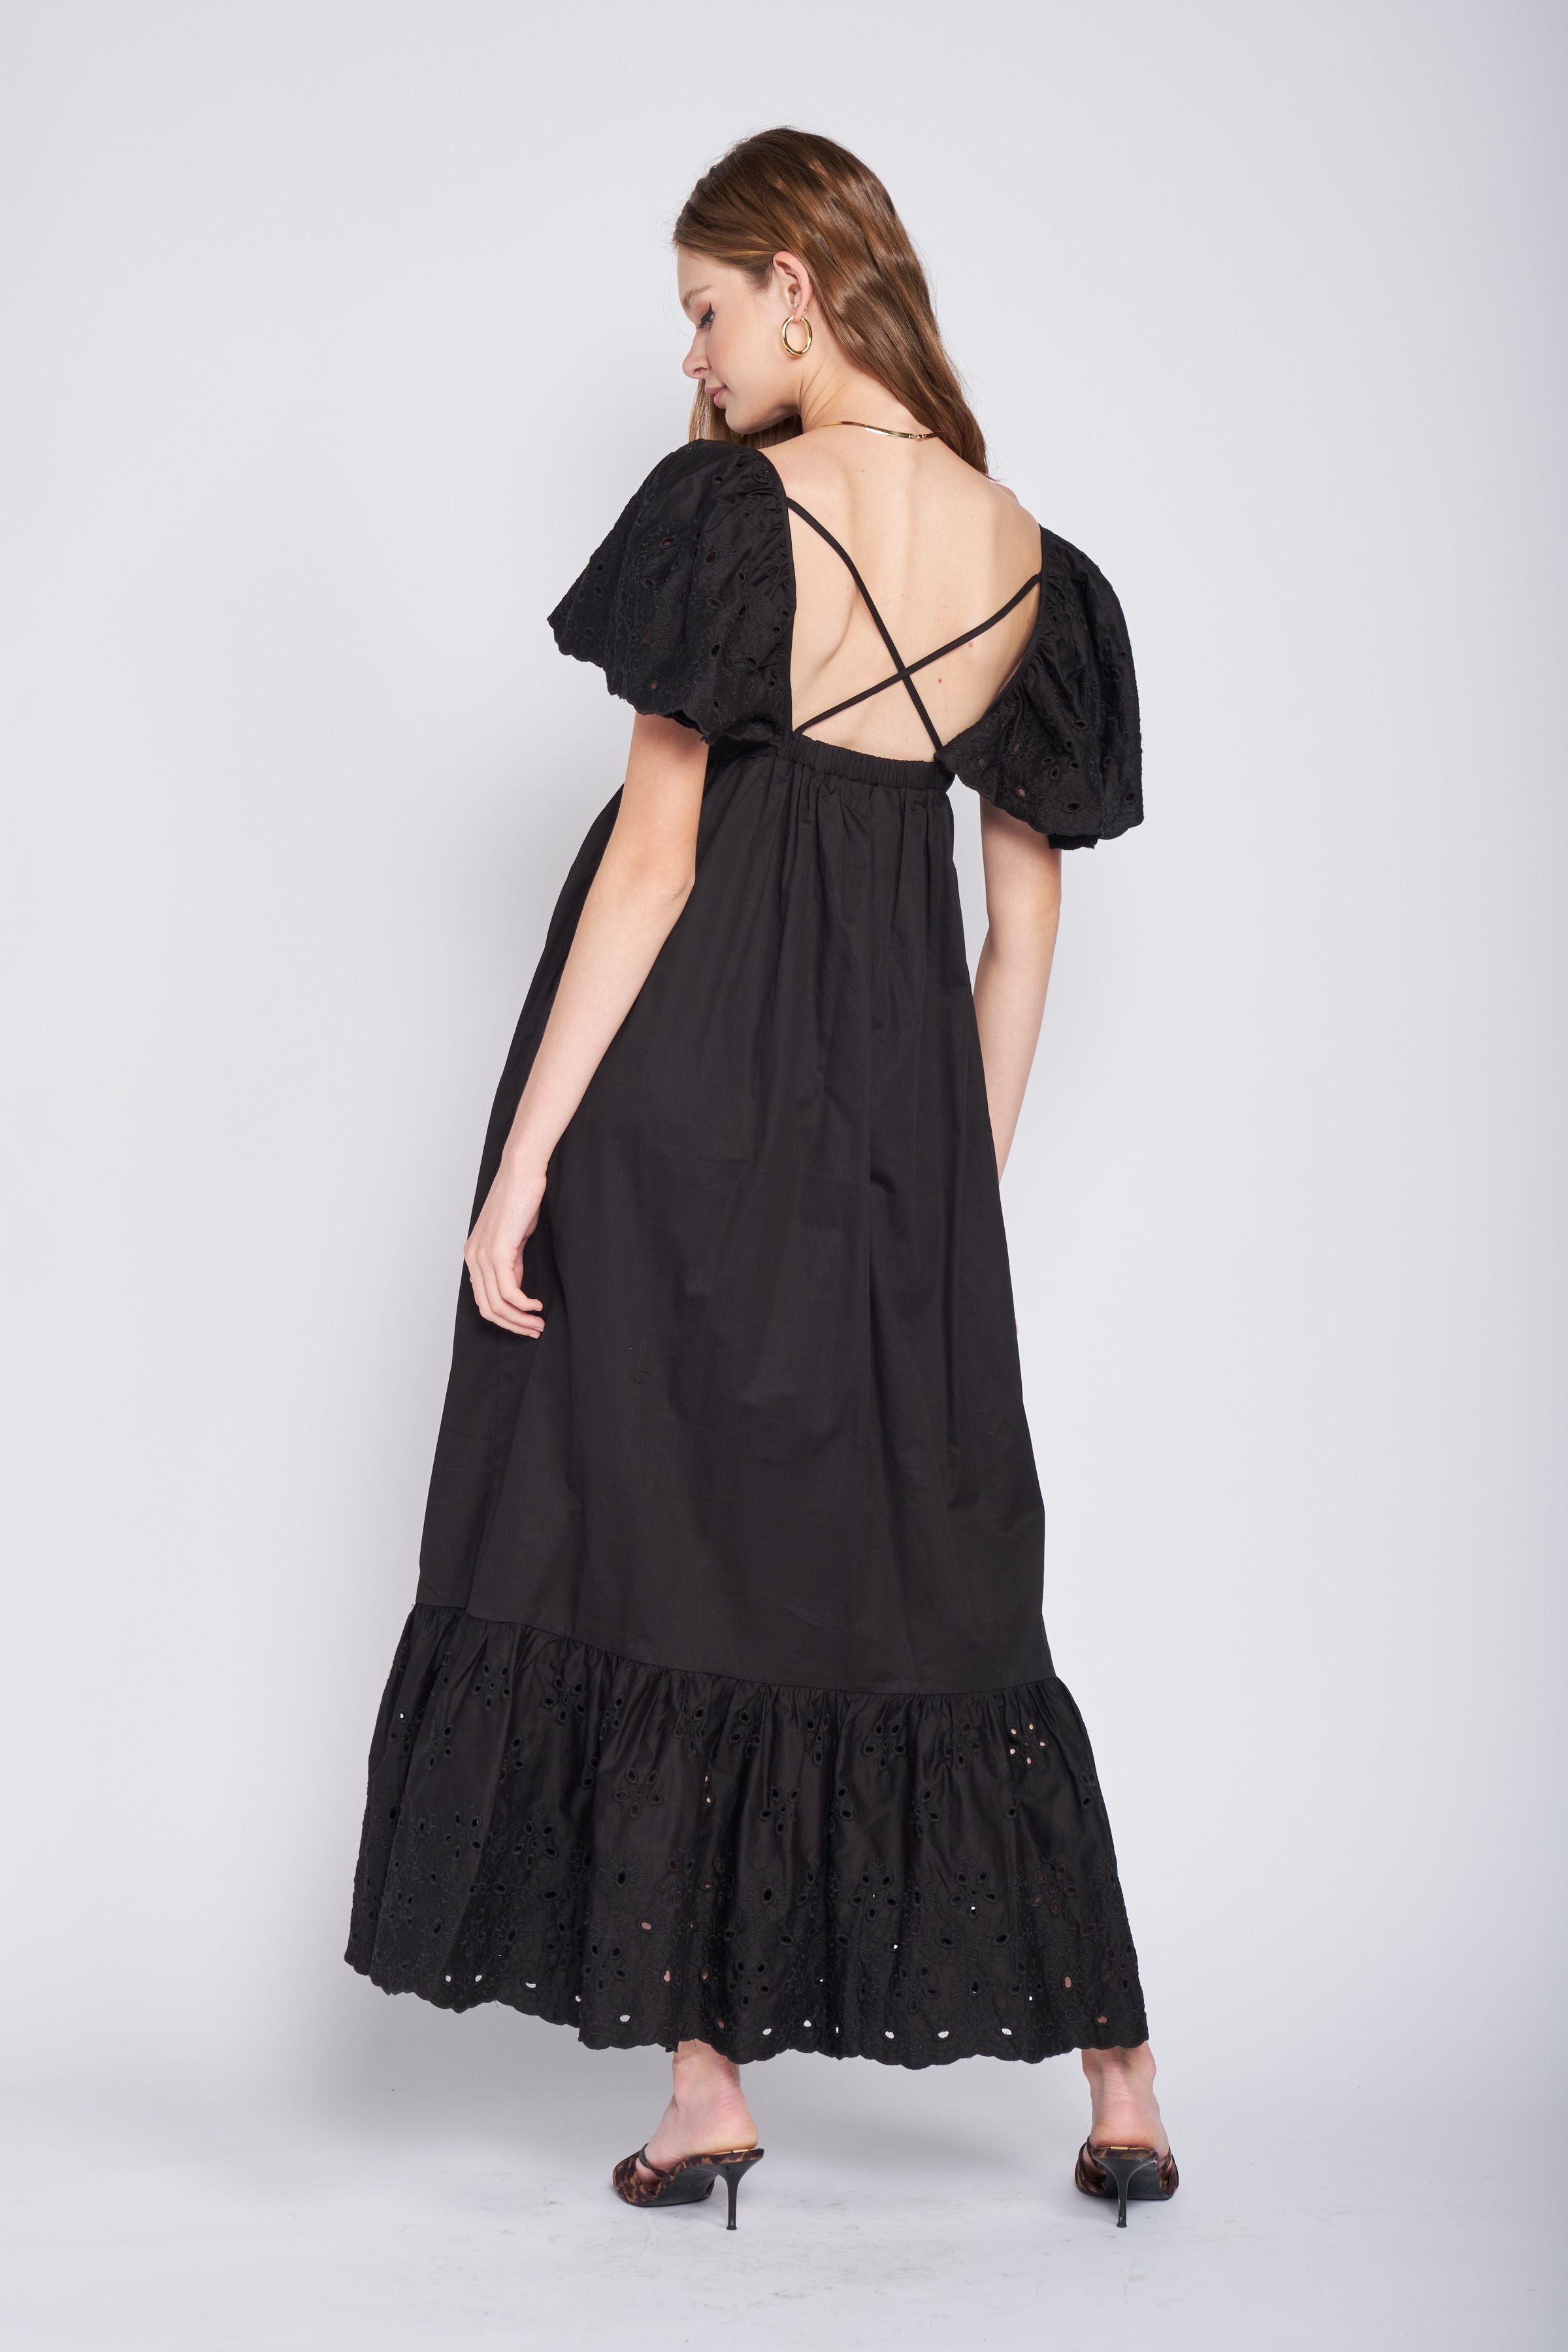 Barnette Dress- Black